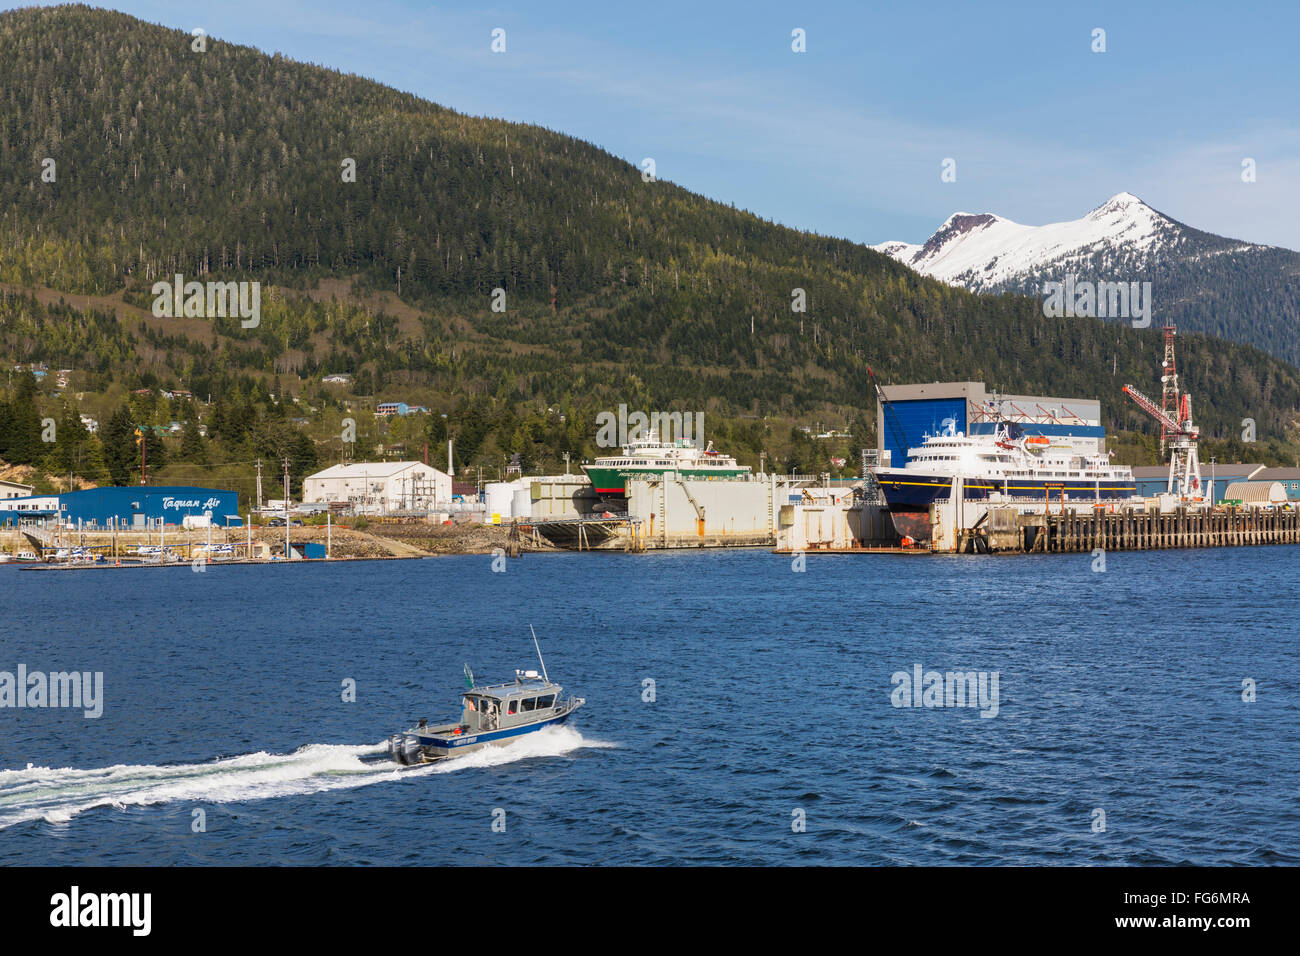 Ein Charterboot Angeln geht vor der Uferpromenade Docks und Werften, Ketchikan, südöstlichen Alaska, Frühling Stockfoto